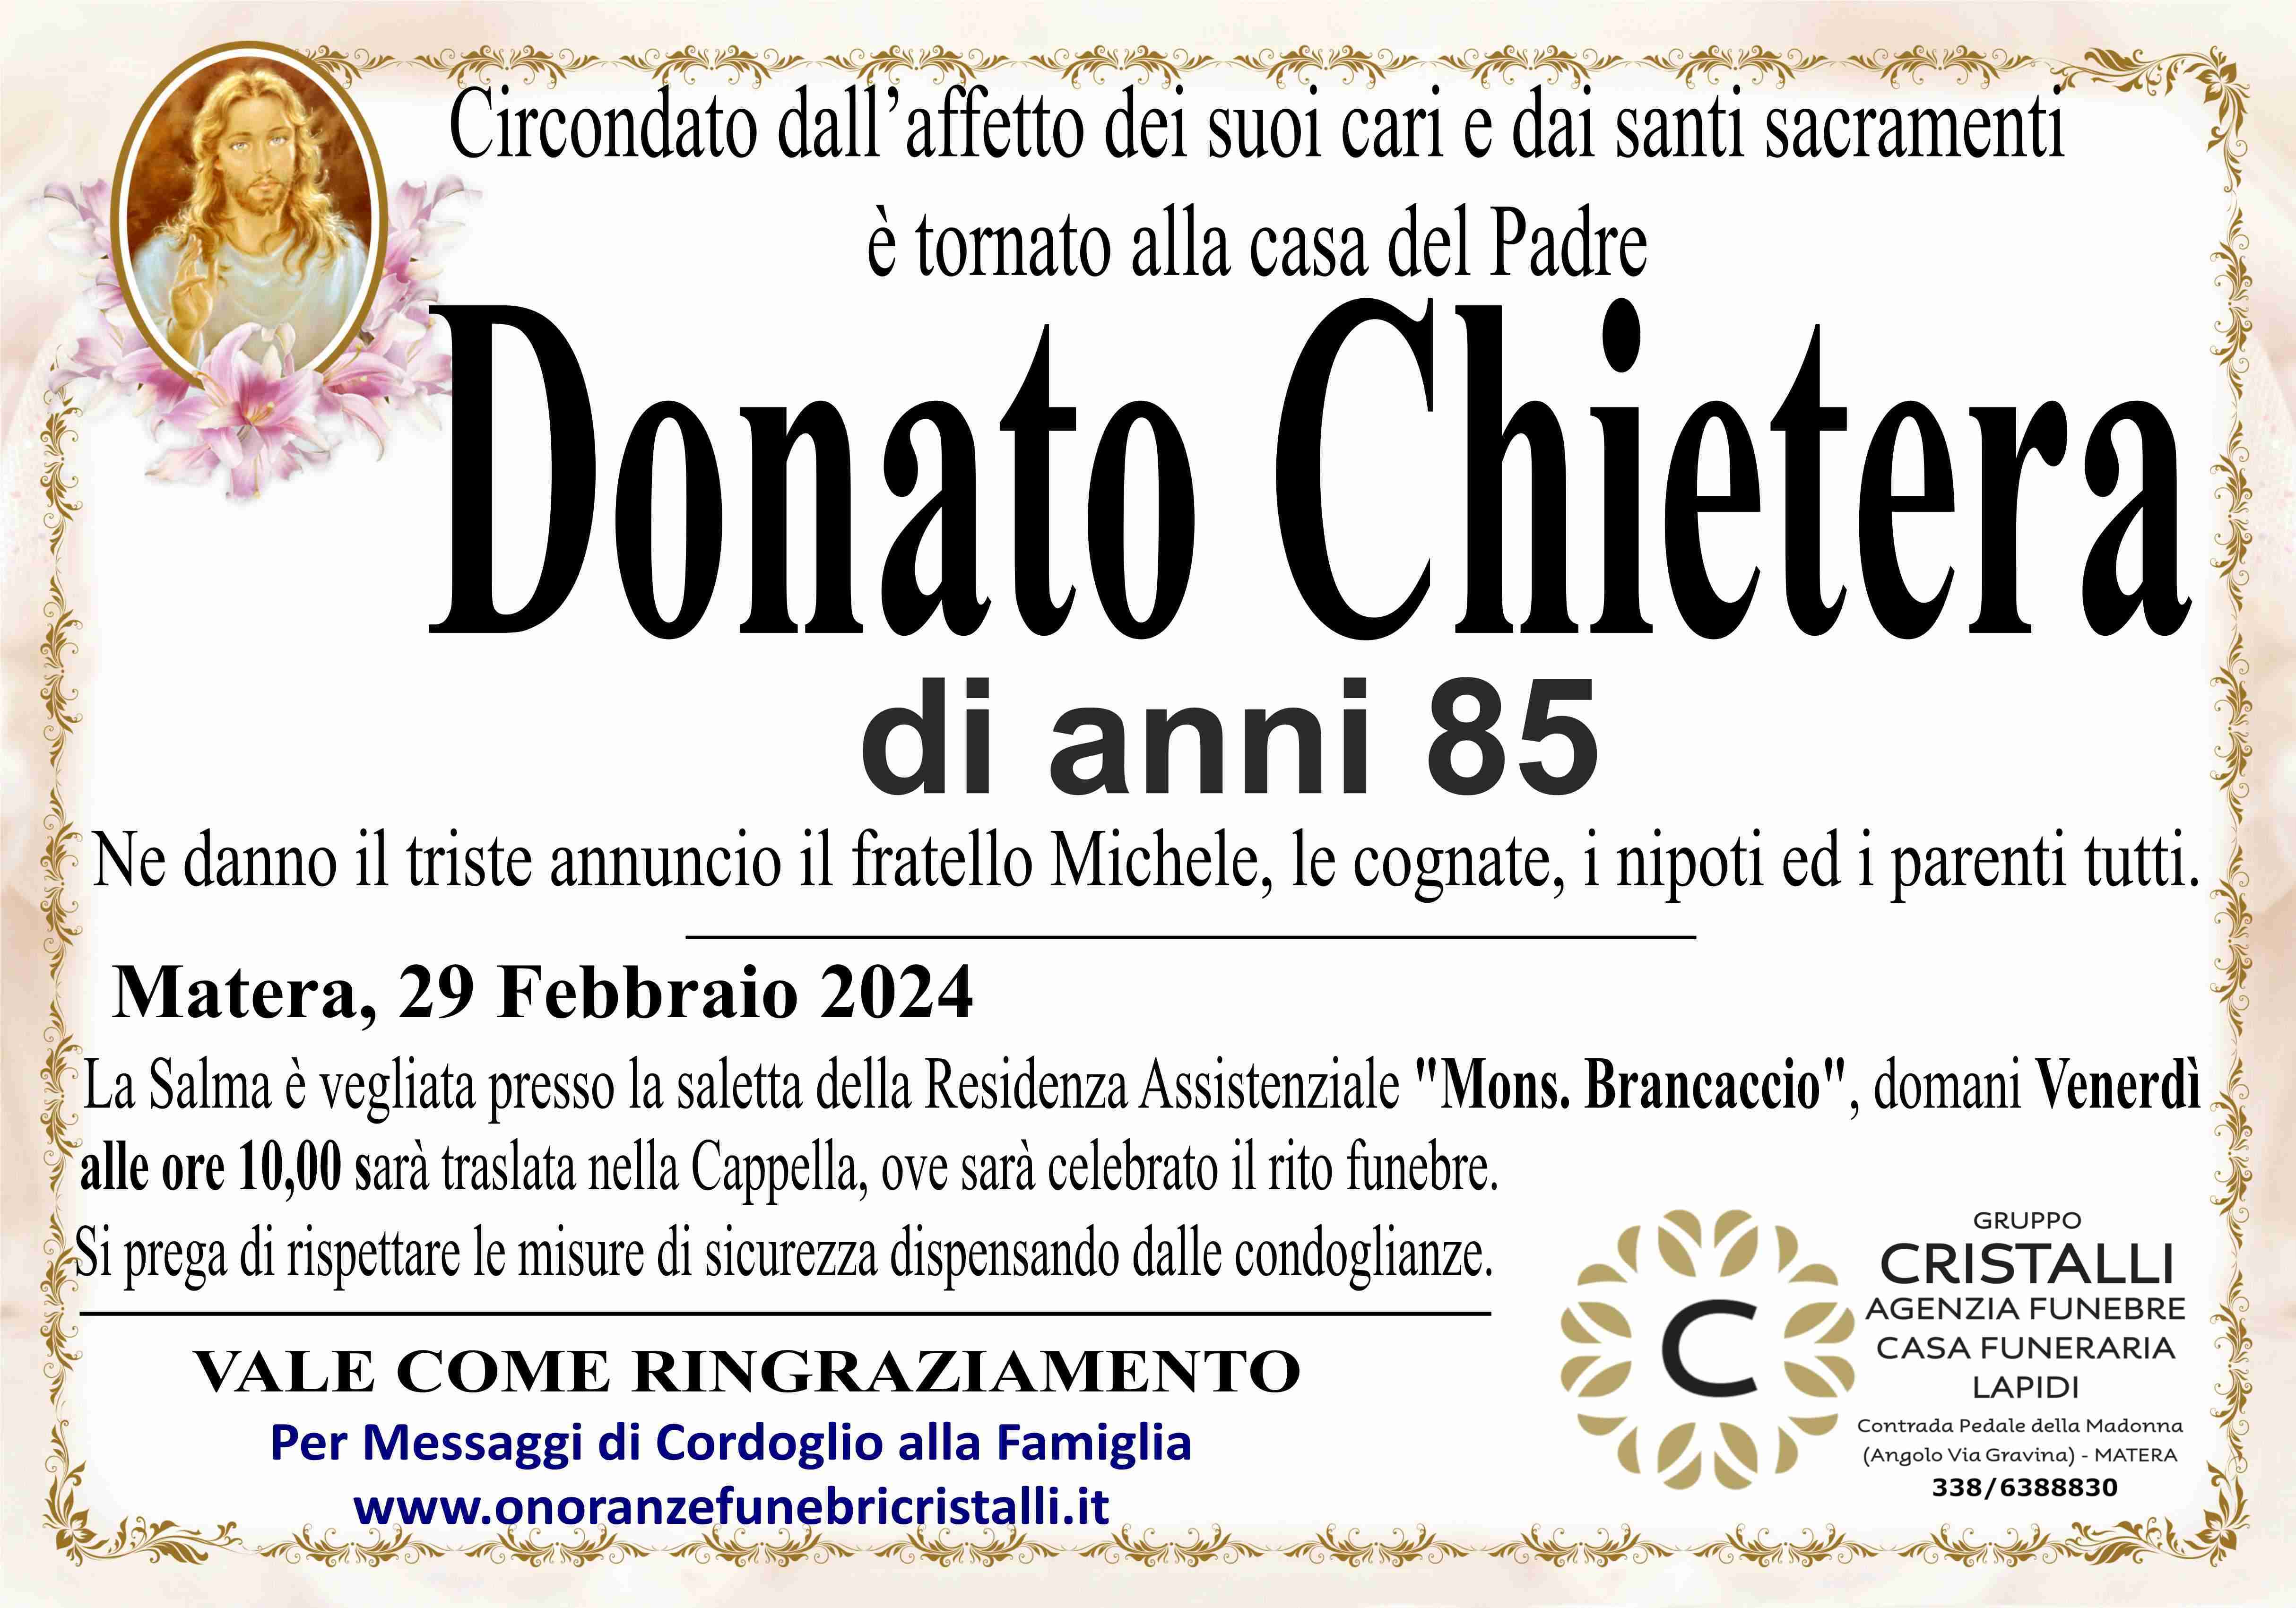 Donato Chietera